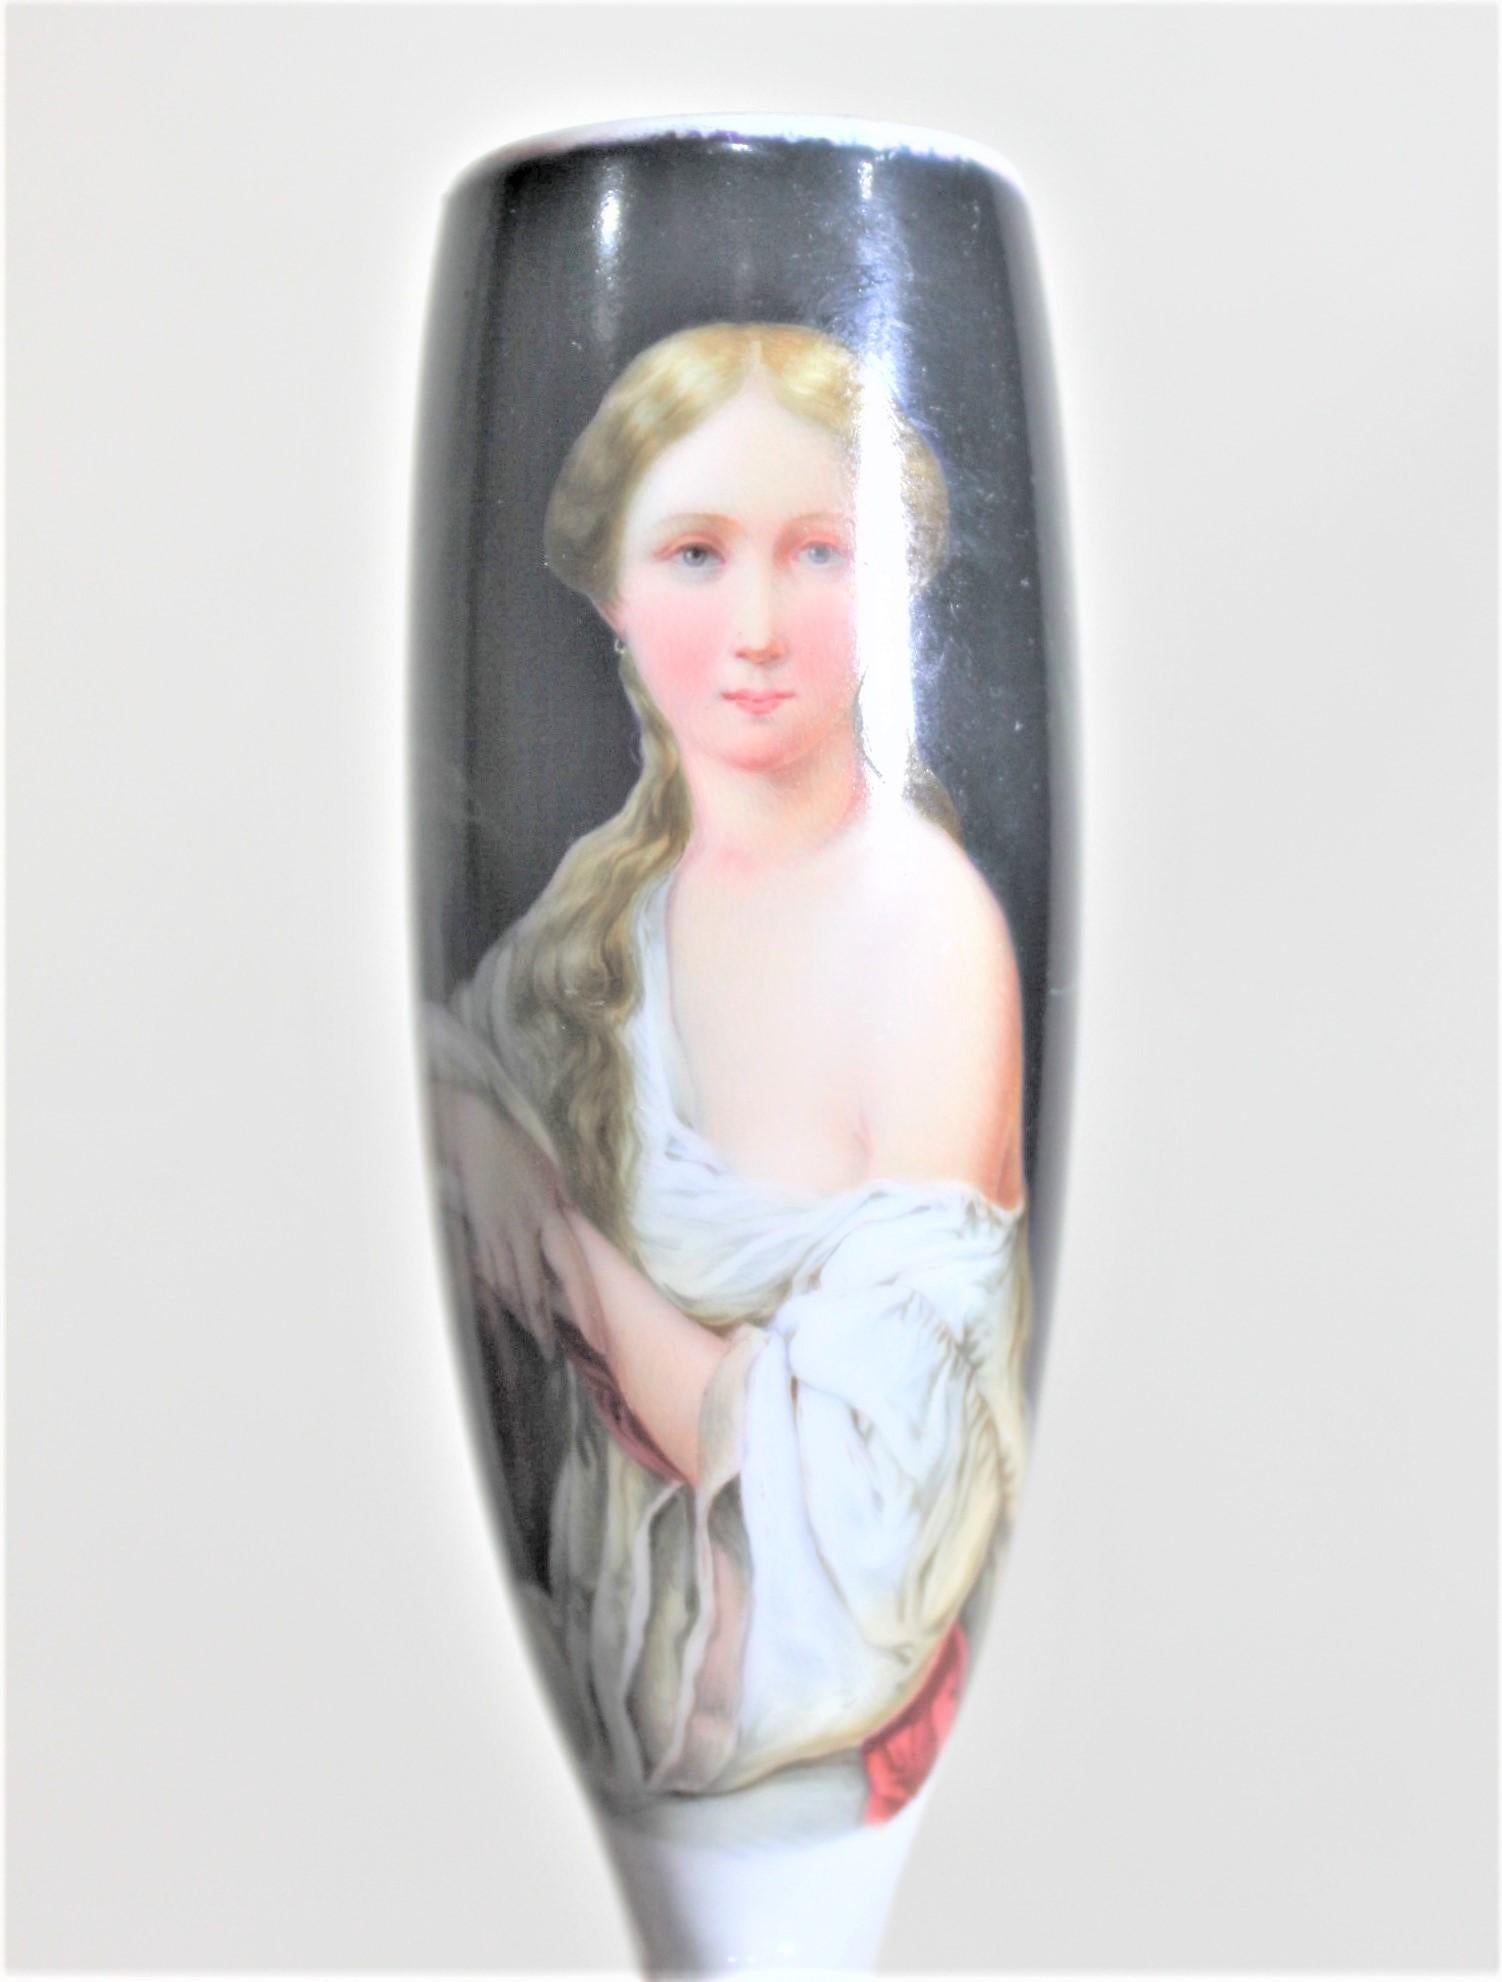 Dieser antike und handbemalte Pfeifenkopf ist unsigniert, wurde aber vermutlich um 1880 in Österreich im Stil des Biedermeier hergestellt. Dieser hohe Pfeifenkopf zeigt ein sehr gut ausgeführtes, handgemaltes Frauenporträt in zeitgenössischem Kostüm